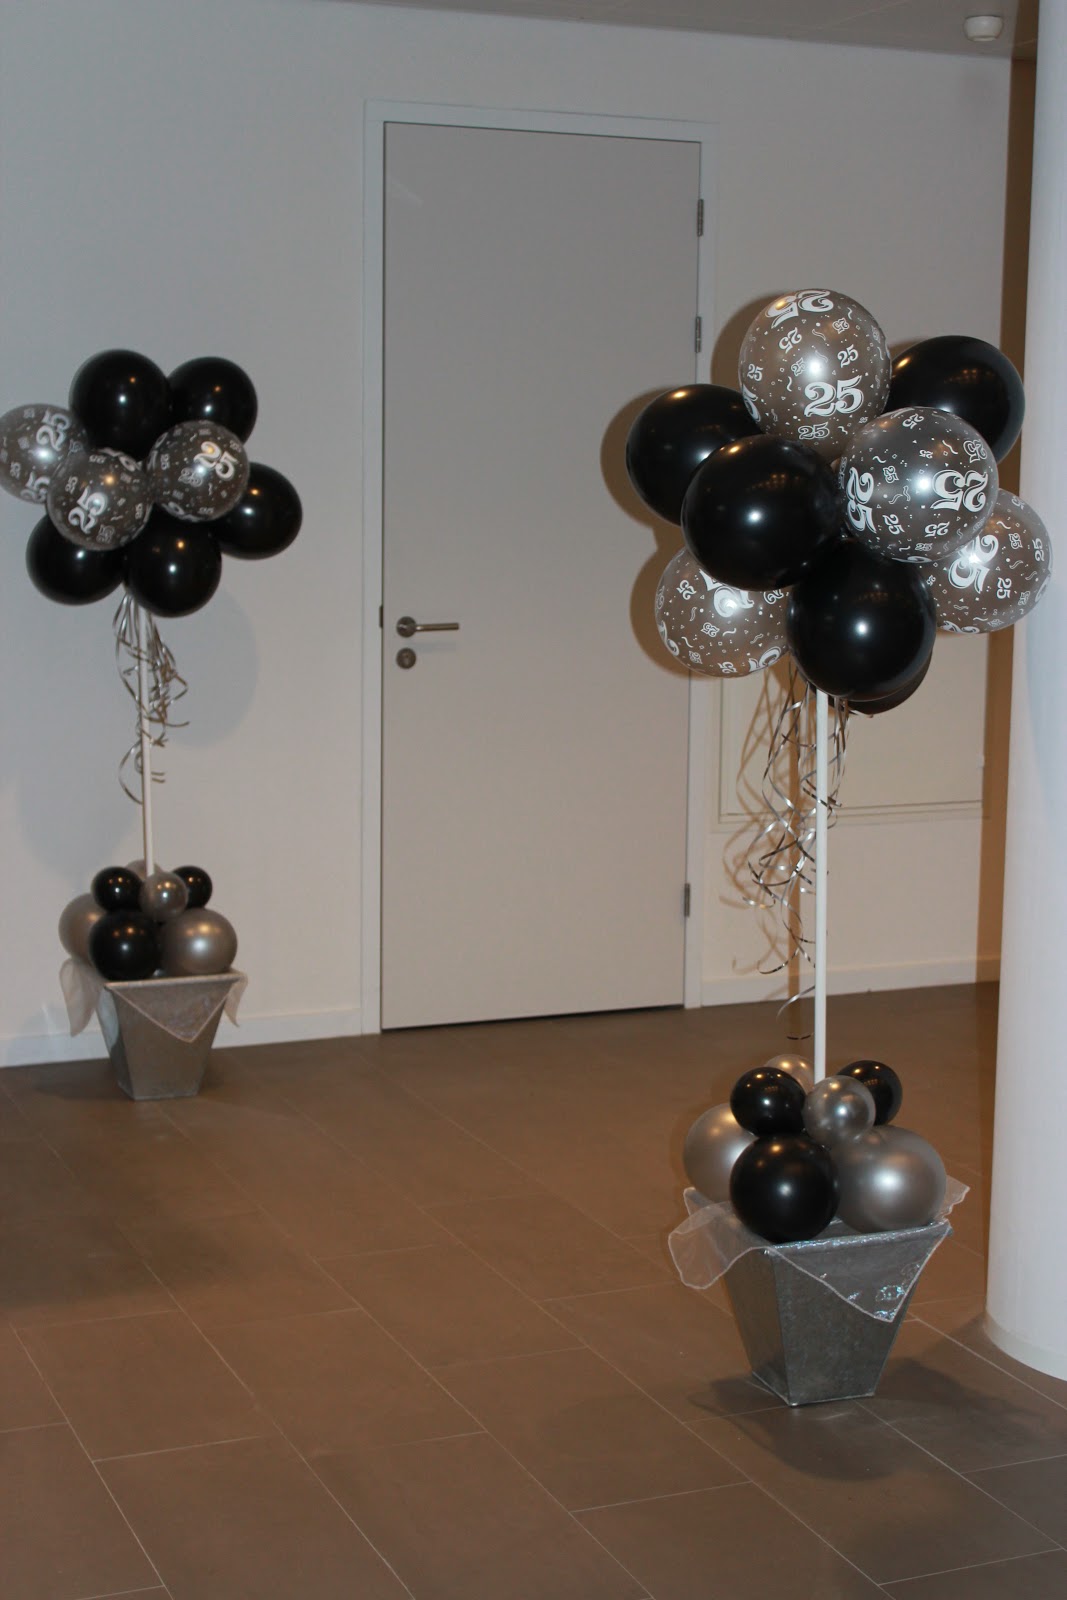 lippen plan staal WWW.A-BALLONNEN.NL voor decoratie met ballonnen: www.a-ballonnen.nl  Versiering met ballonnen bij Rabobank Roelofarendsveen verzorgd